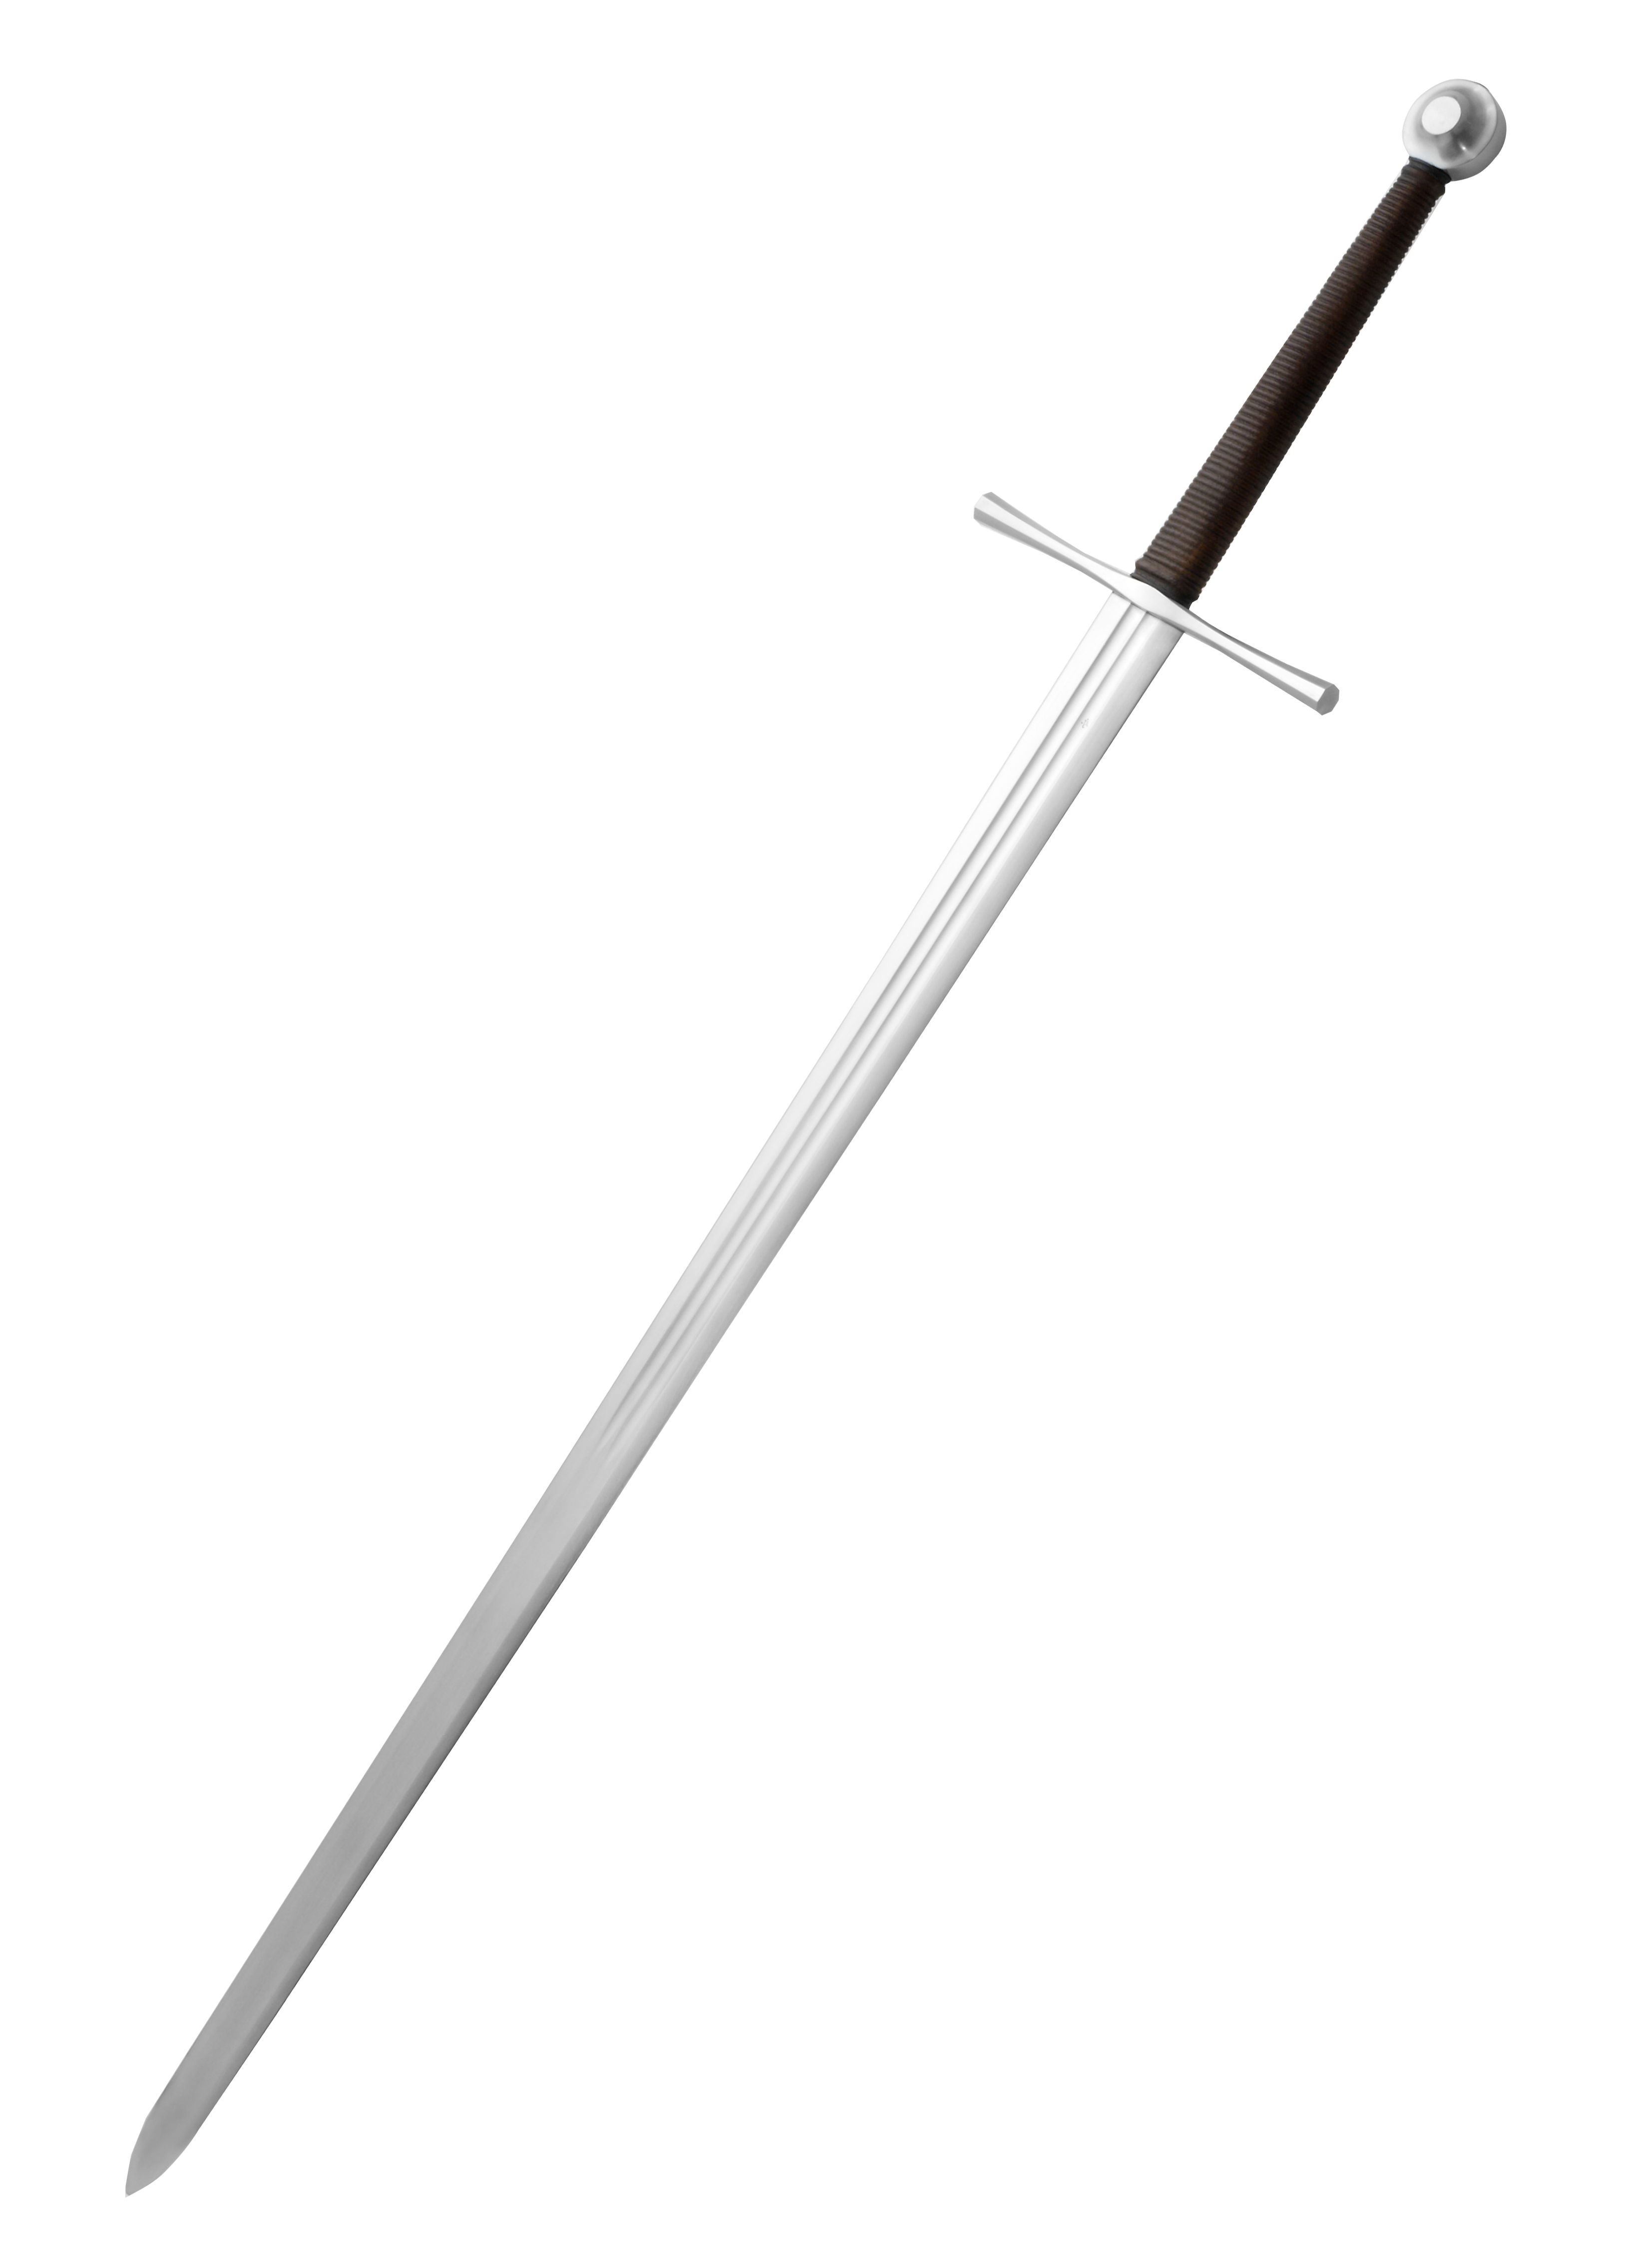 Image Of A Sword - KibrisPDR